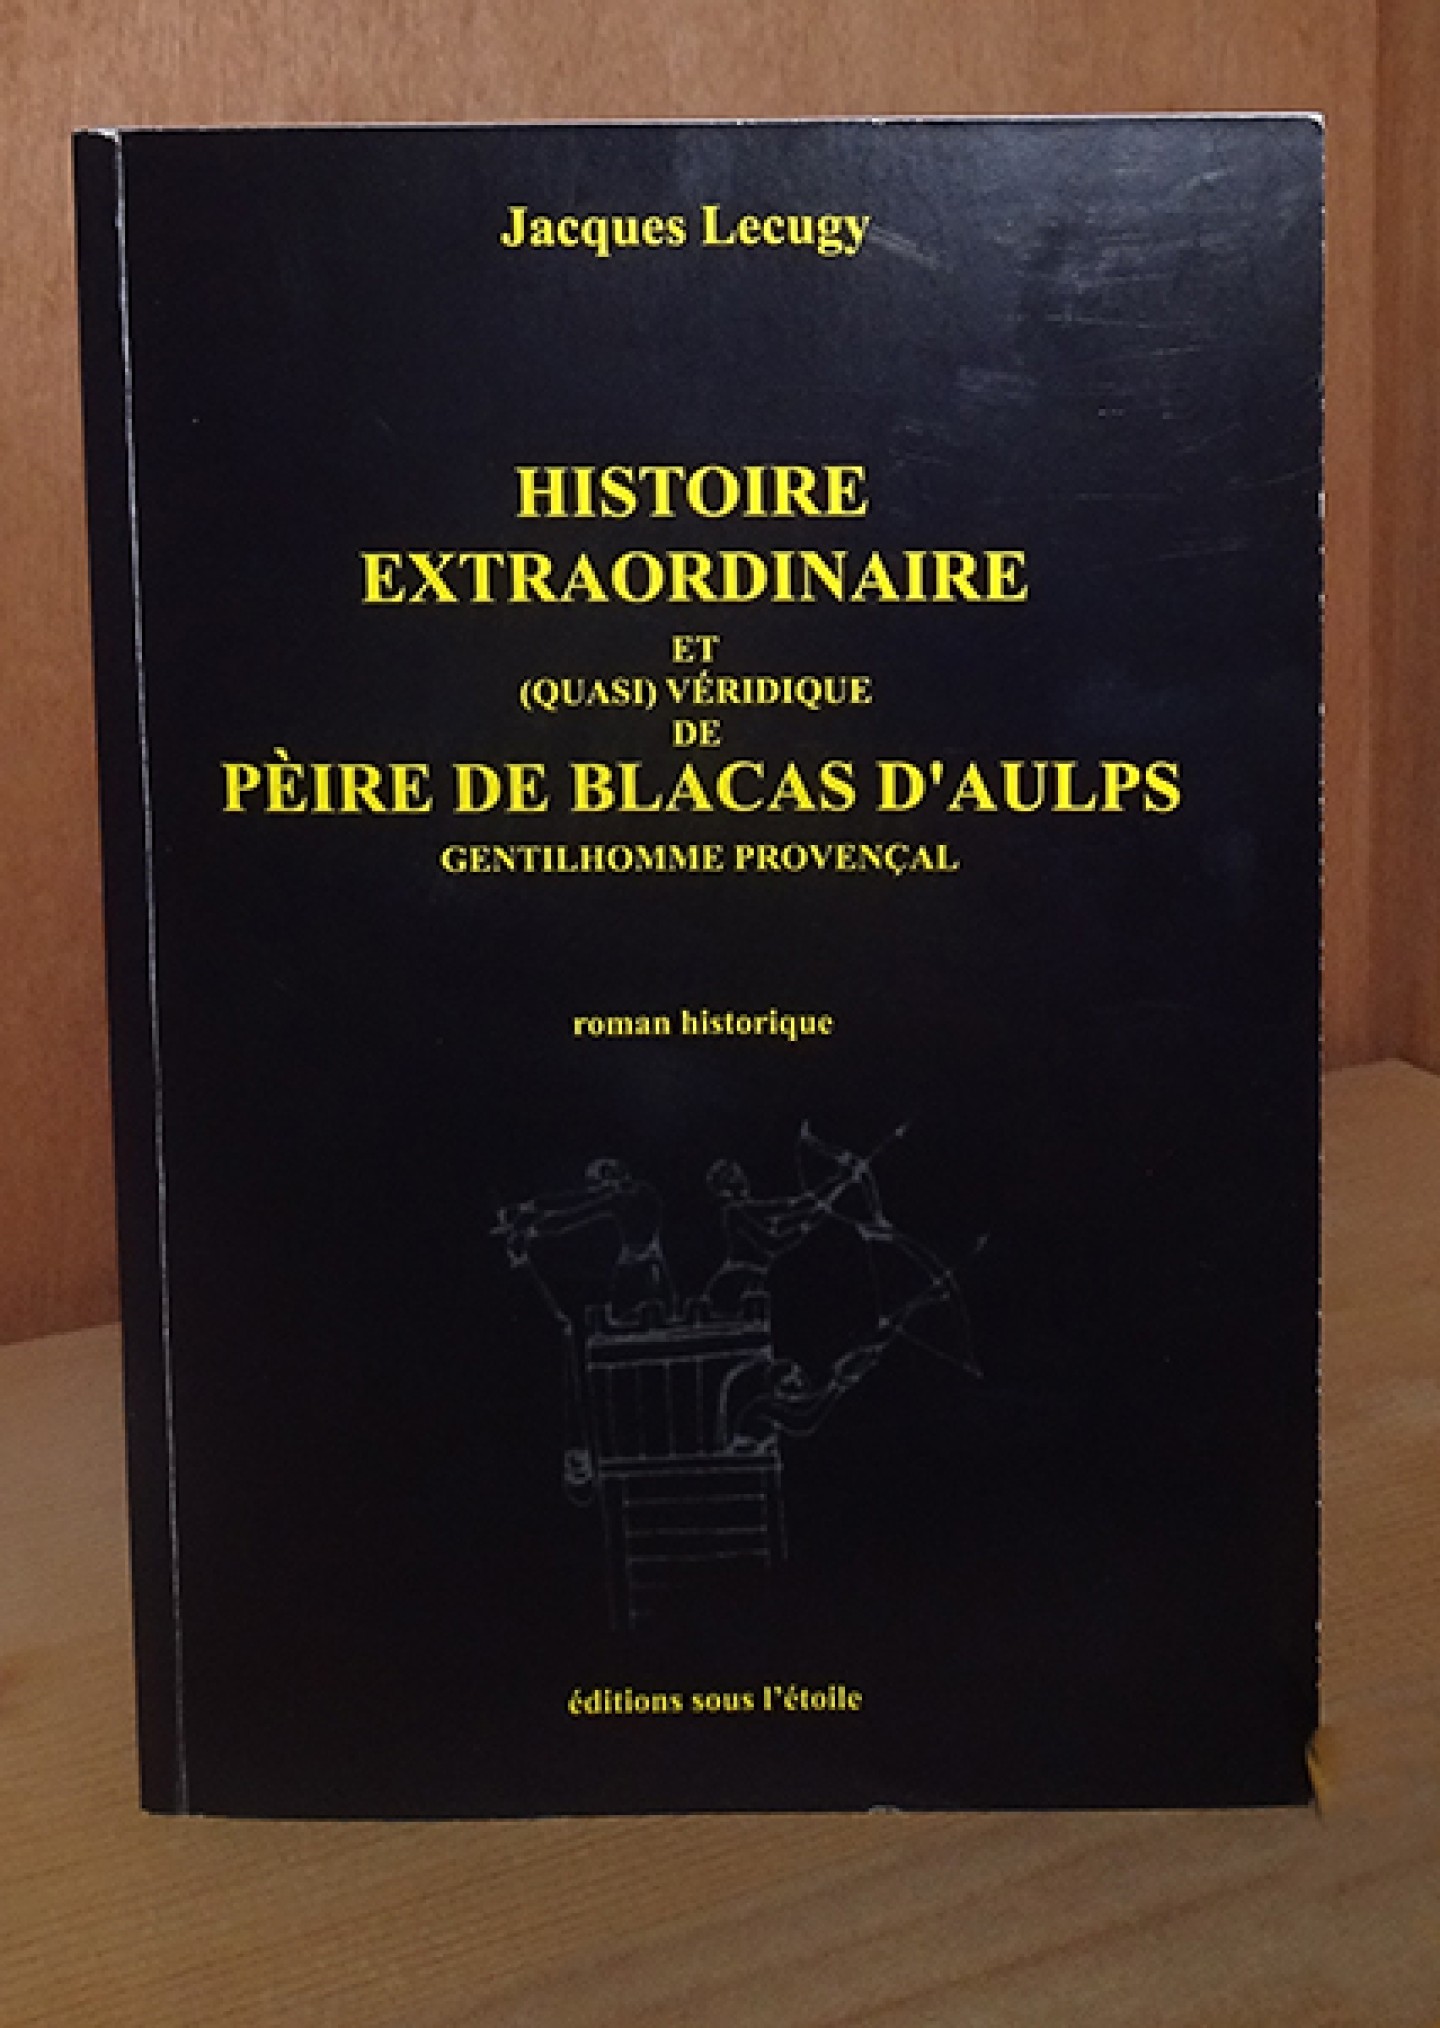 Histoire extraordinaire de Pèire de Blacas d’Aulps de Jacques Lecugy